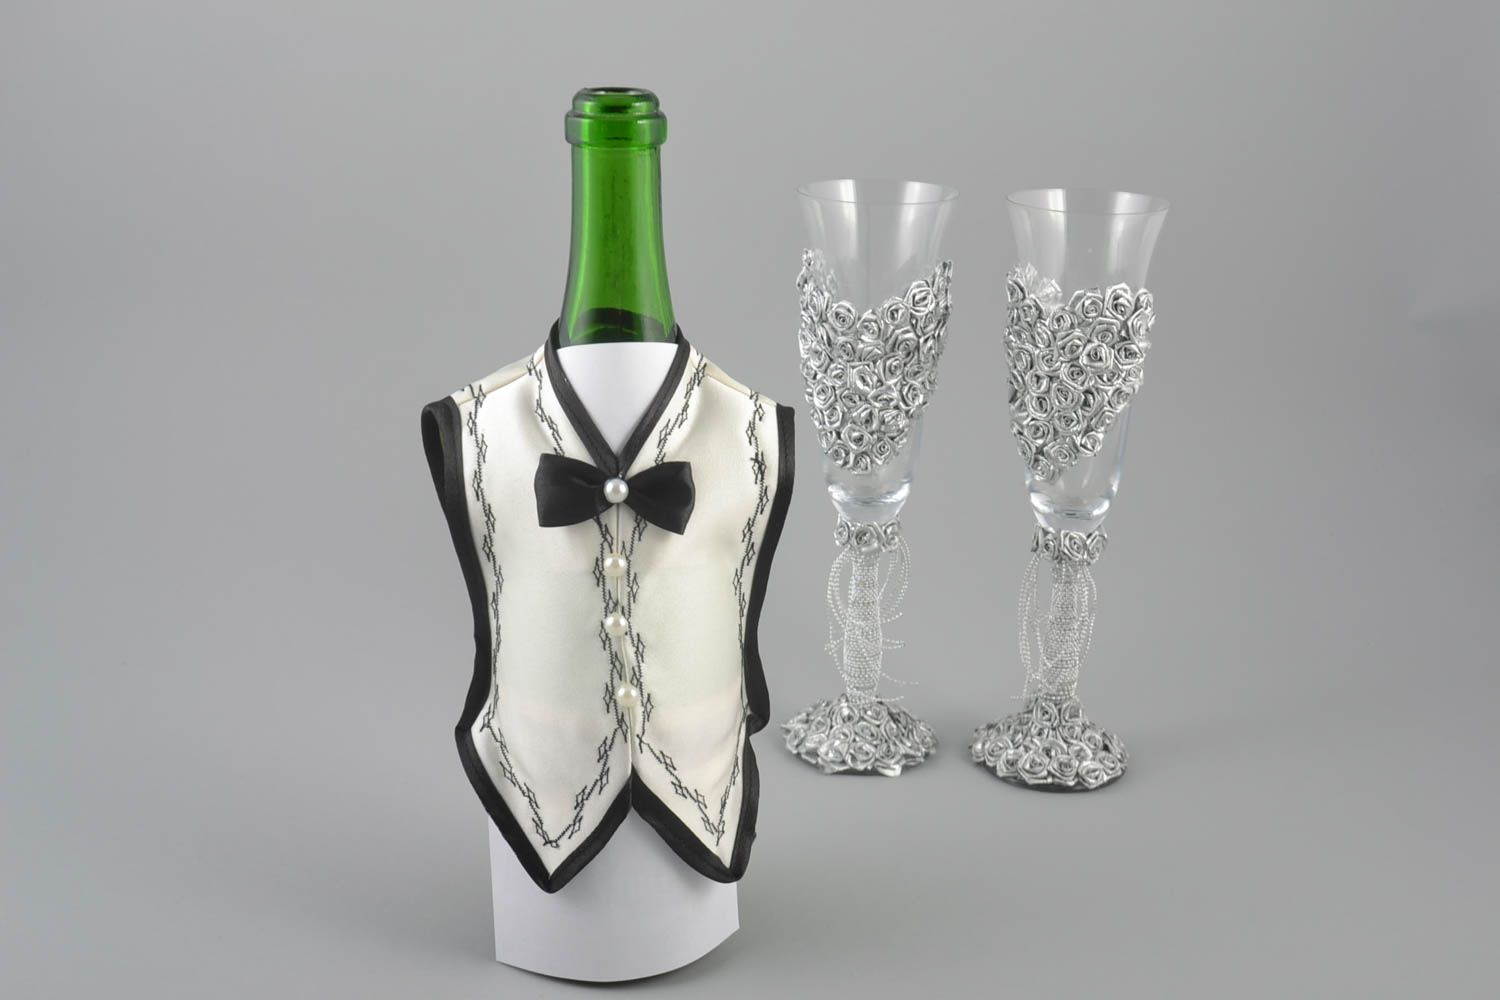 Одежда жениха на бутылку шампанского из атласа ручной работы в виде белого фрака фото 1